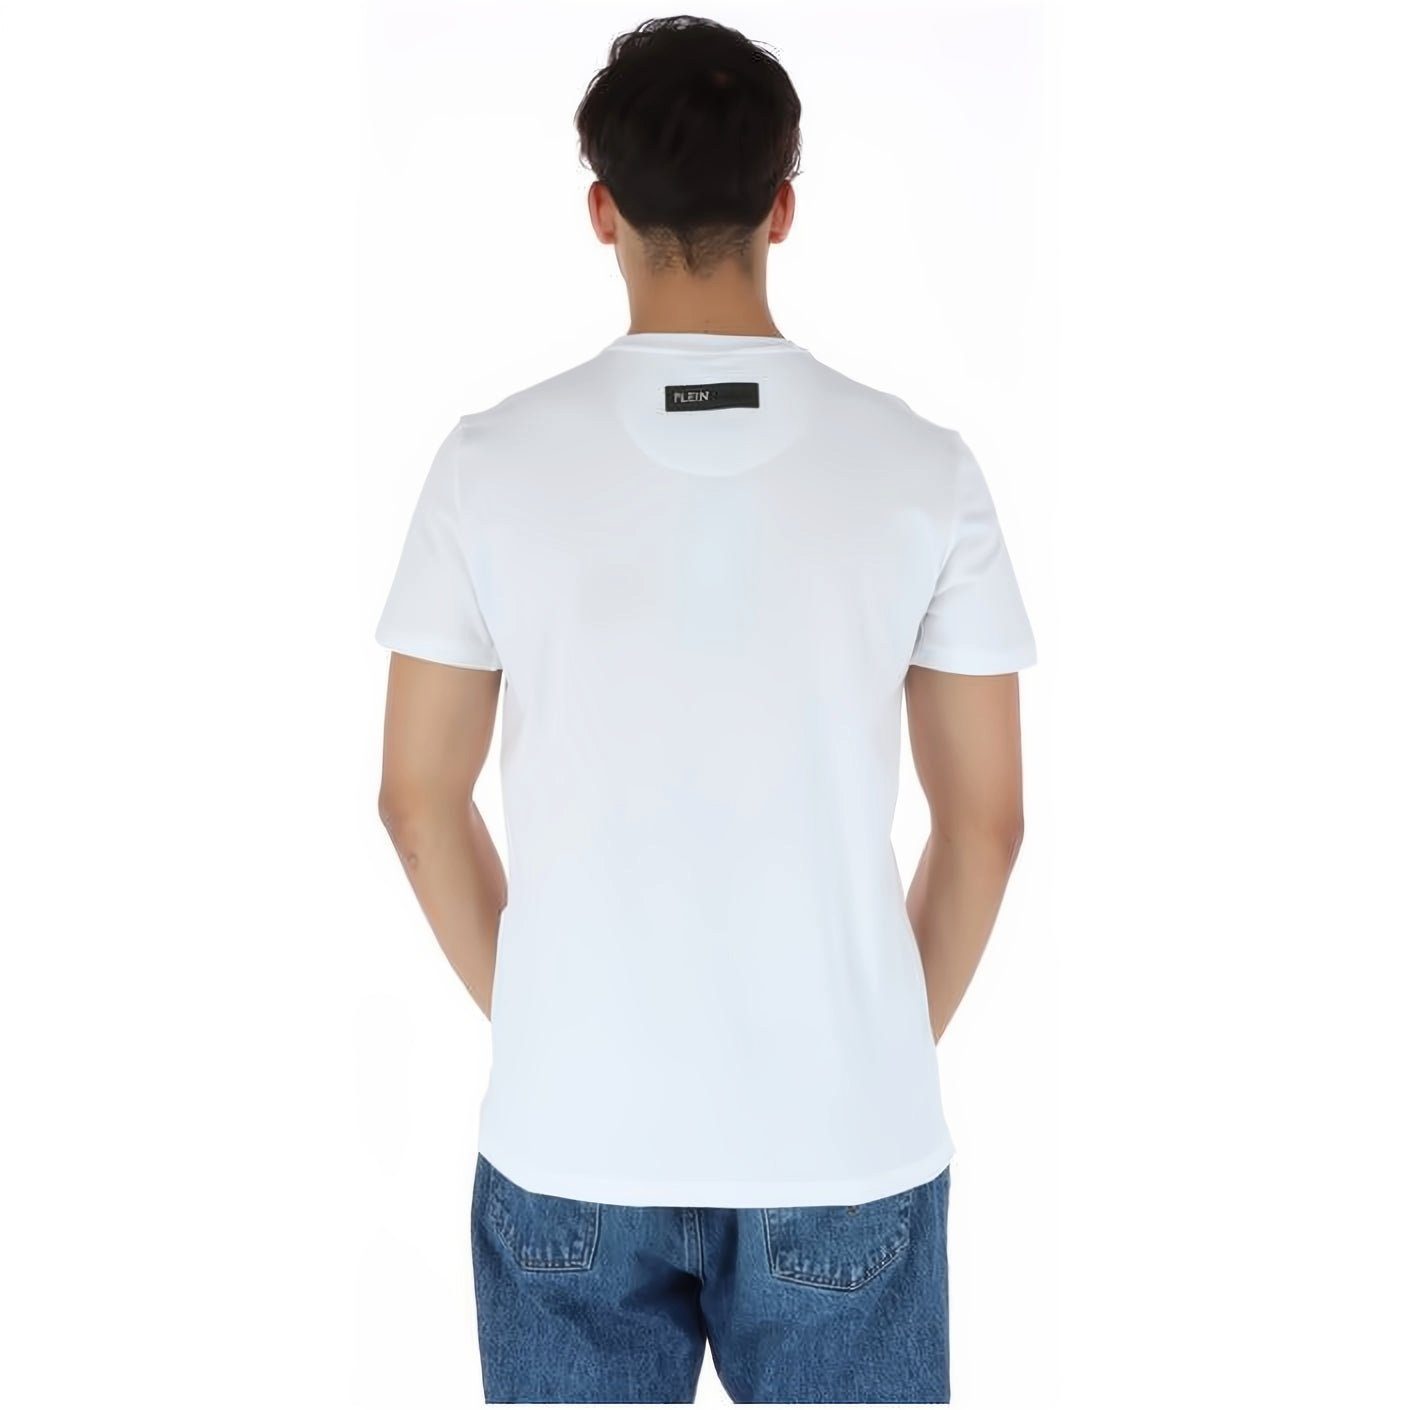 PLEIN SPORT T-Shirt vielfältige Farbauswahl Tragekomfort, hoher Look, Stylischer ROUND NECK